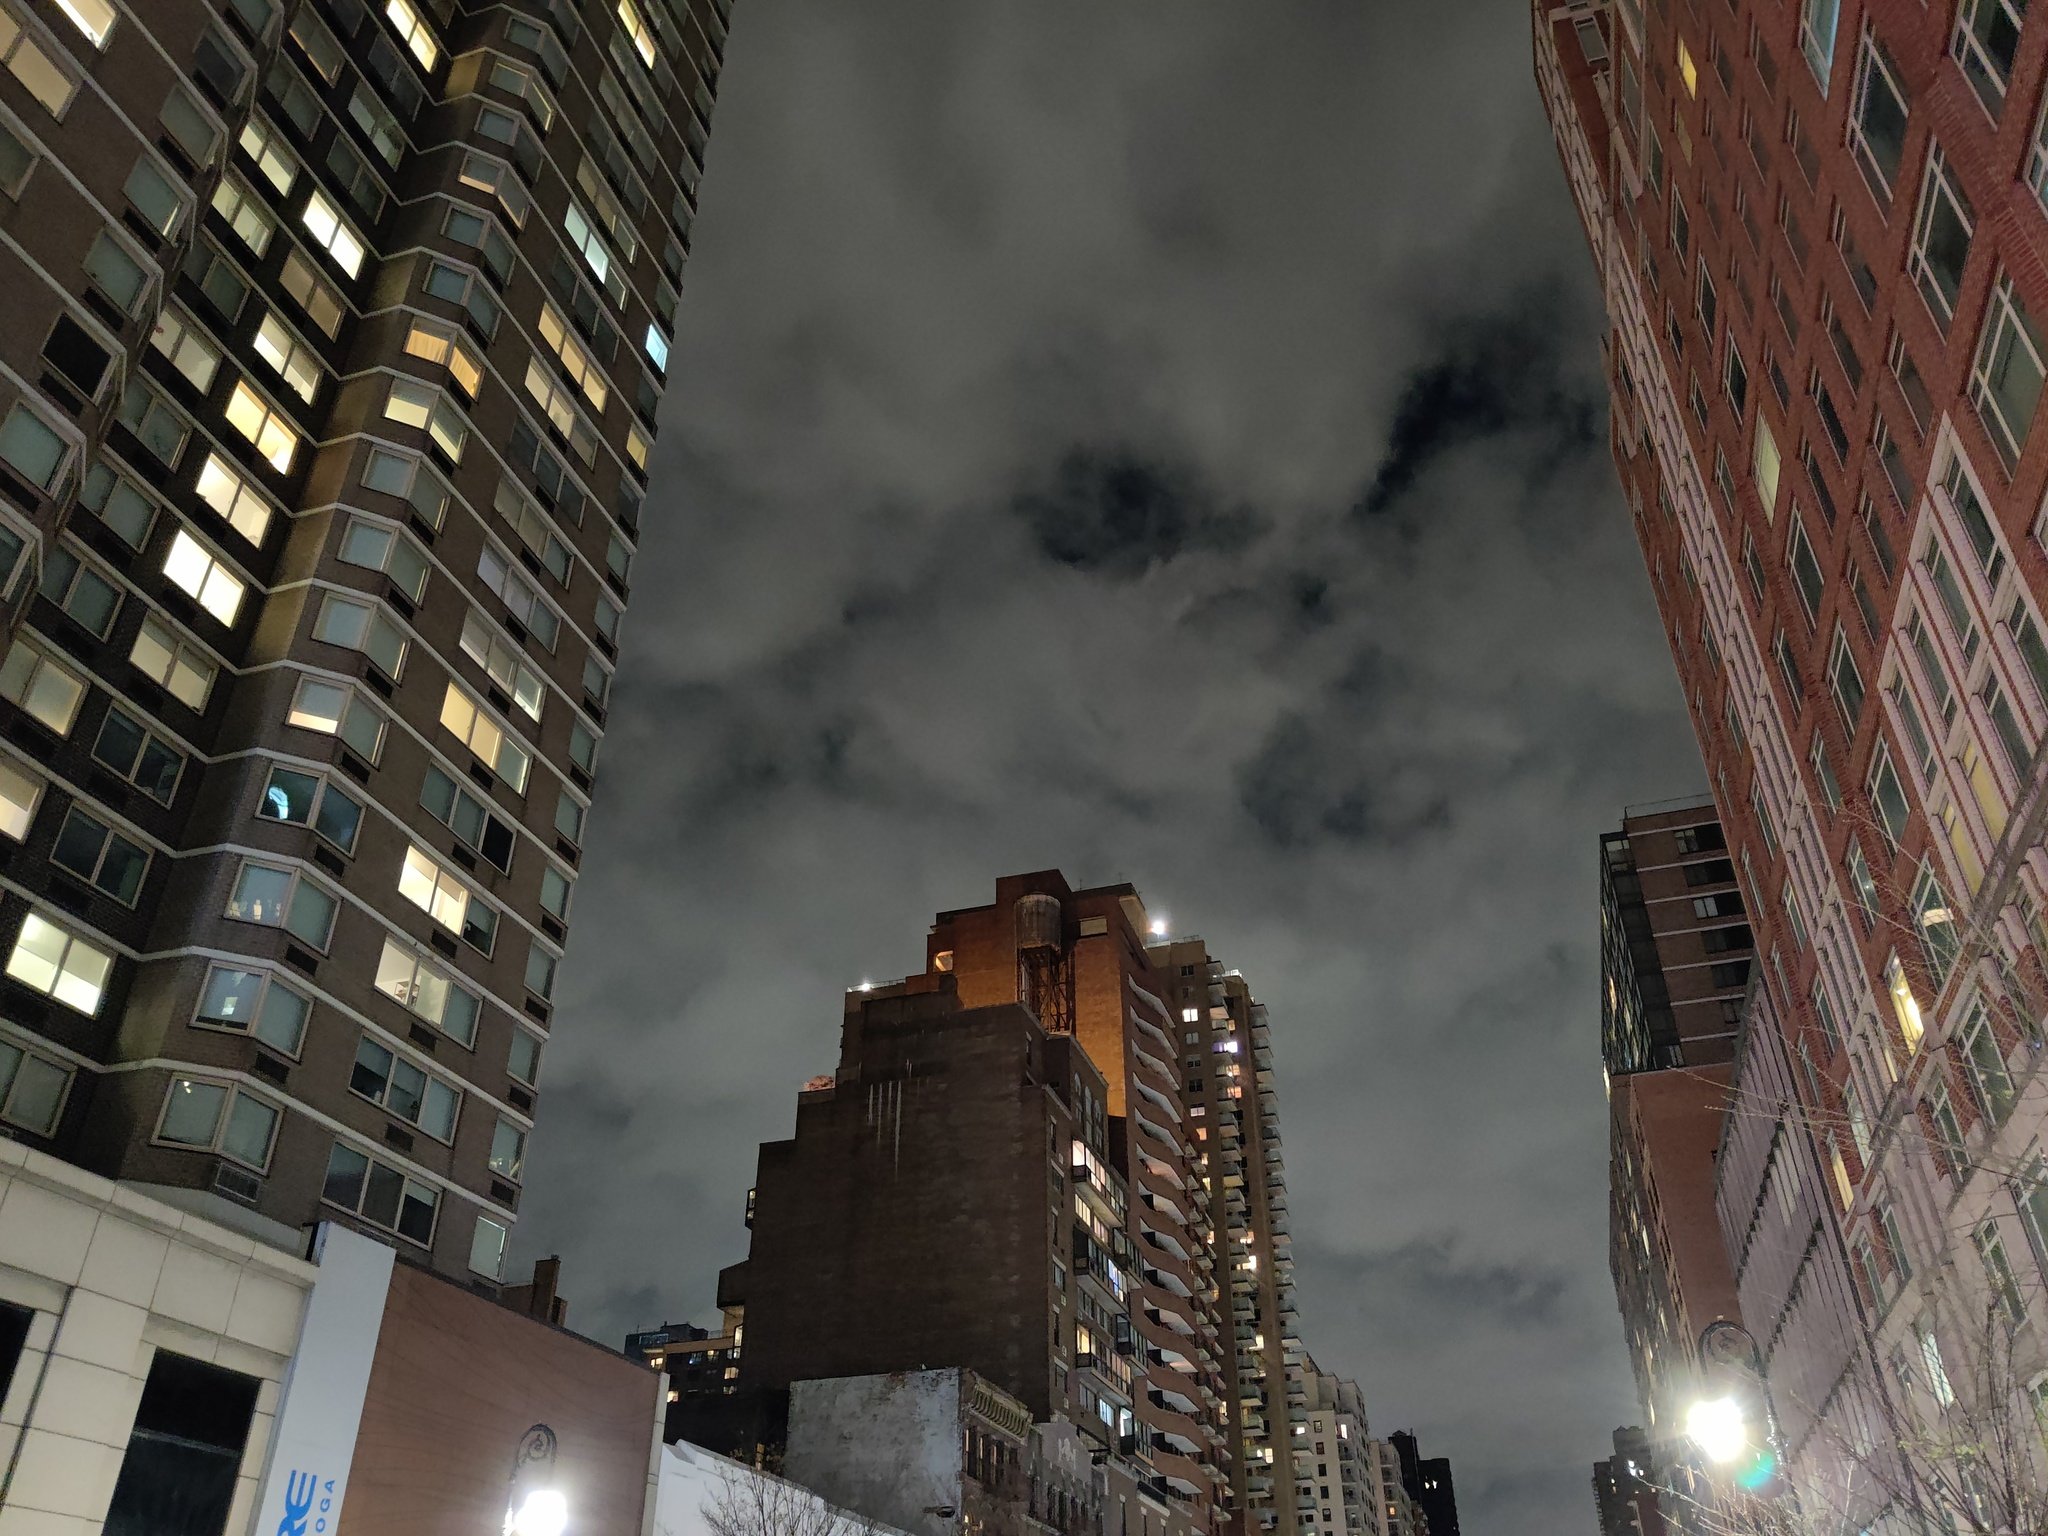 OnePlus 8 night camera sample